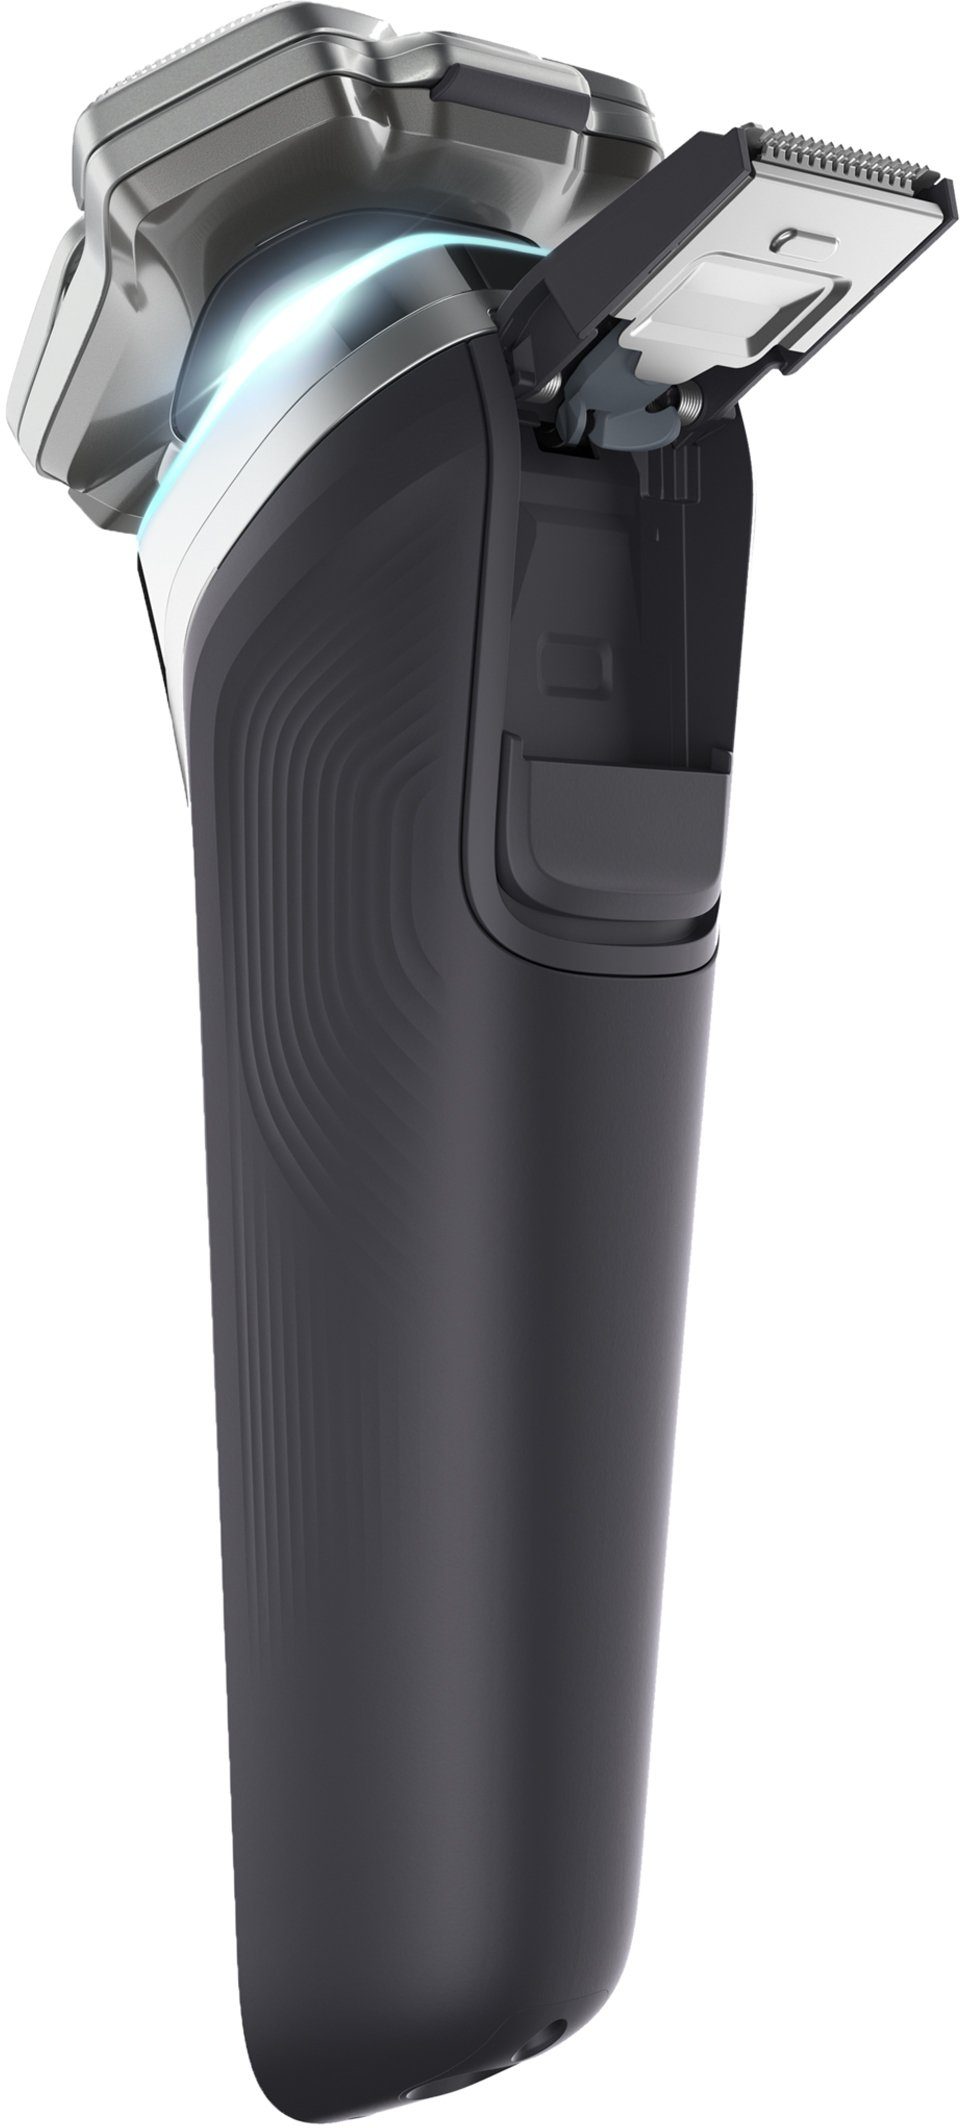 Ladestation Skin Etui Technologie, Elektrorasierer 9000 Philips series und Shaver S9985/35, IQ inkl. mit